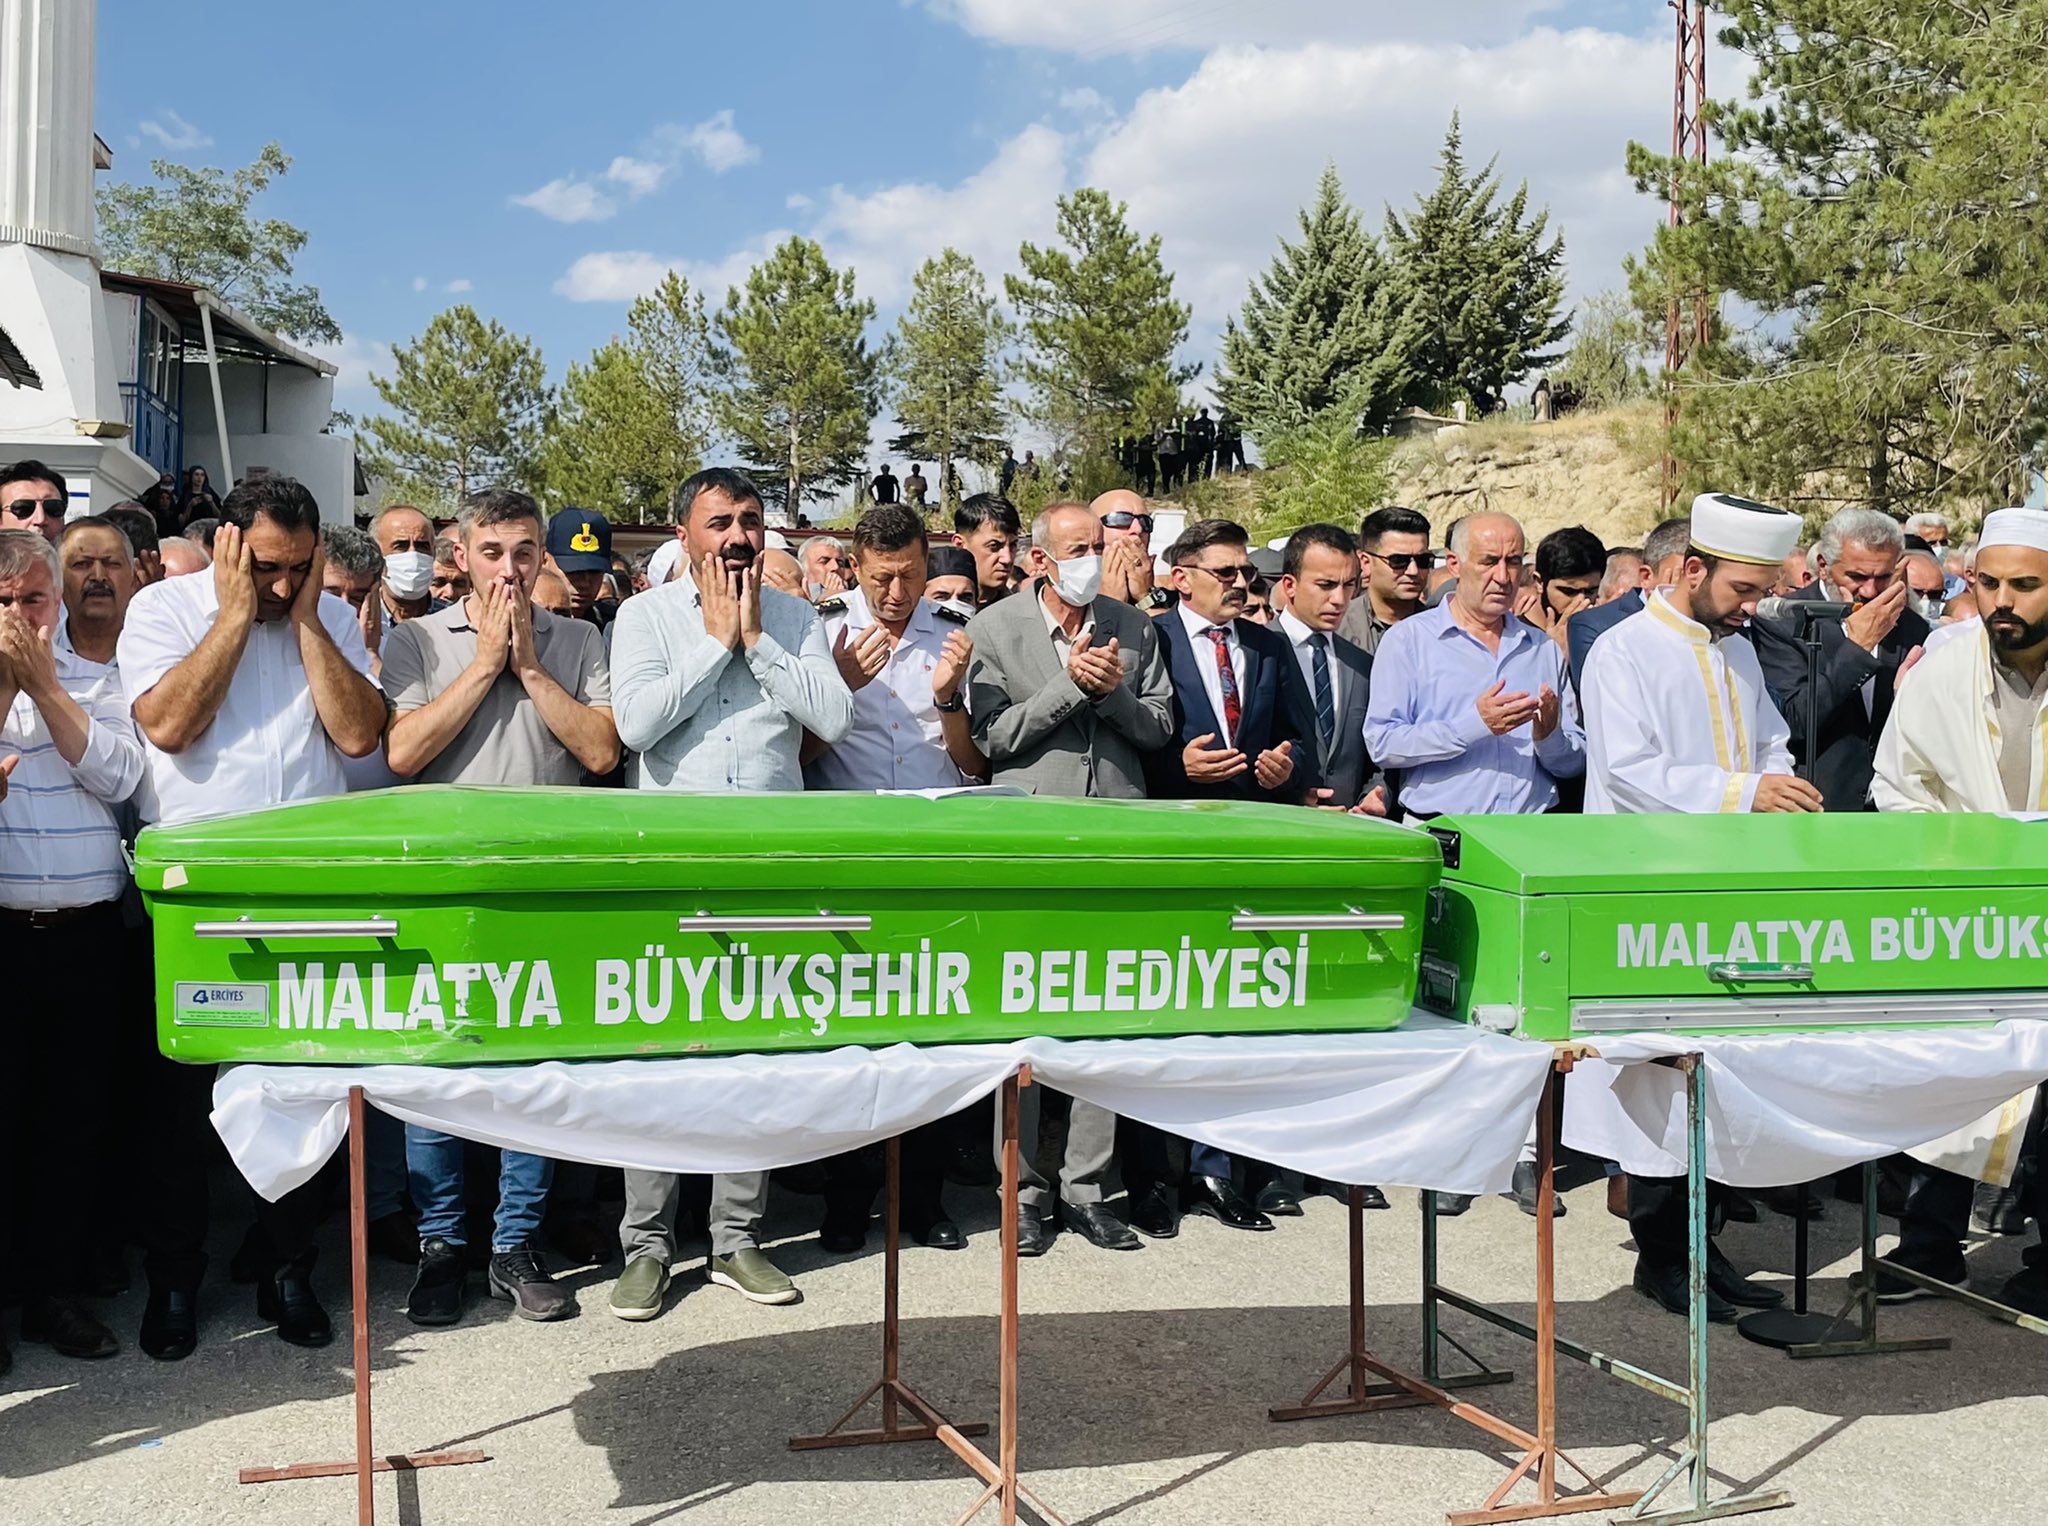 Sivas-Malatya Karayolu üzerinde meydana gelen ve Bursa’daki kına düğününden Hekimhan’a dönmekte olan minibüsün ile kamyonun çarpışması sonucu meydana gelen trafik kazasında ölen 7 kişi Hekimhan’da toprağa verildi.